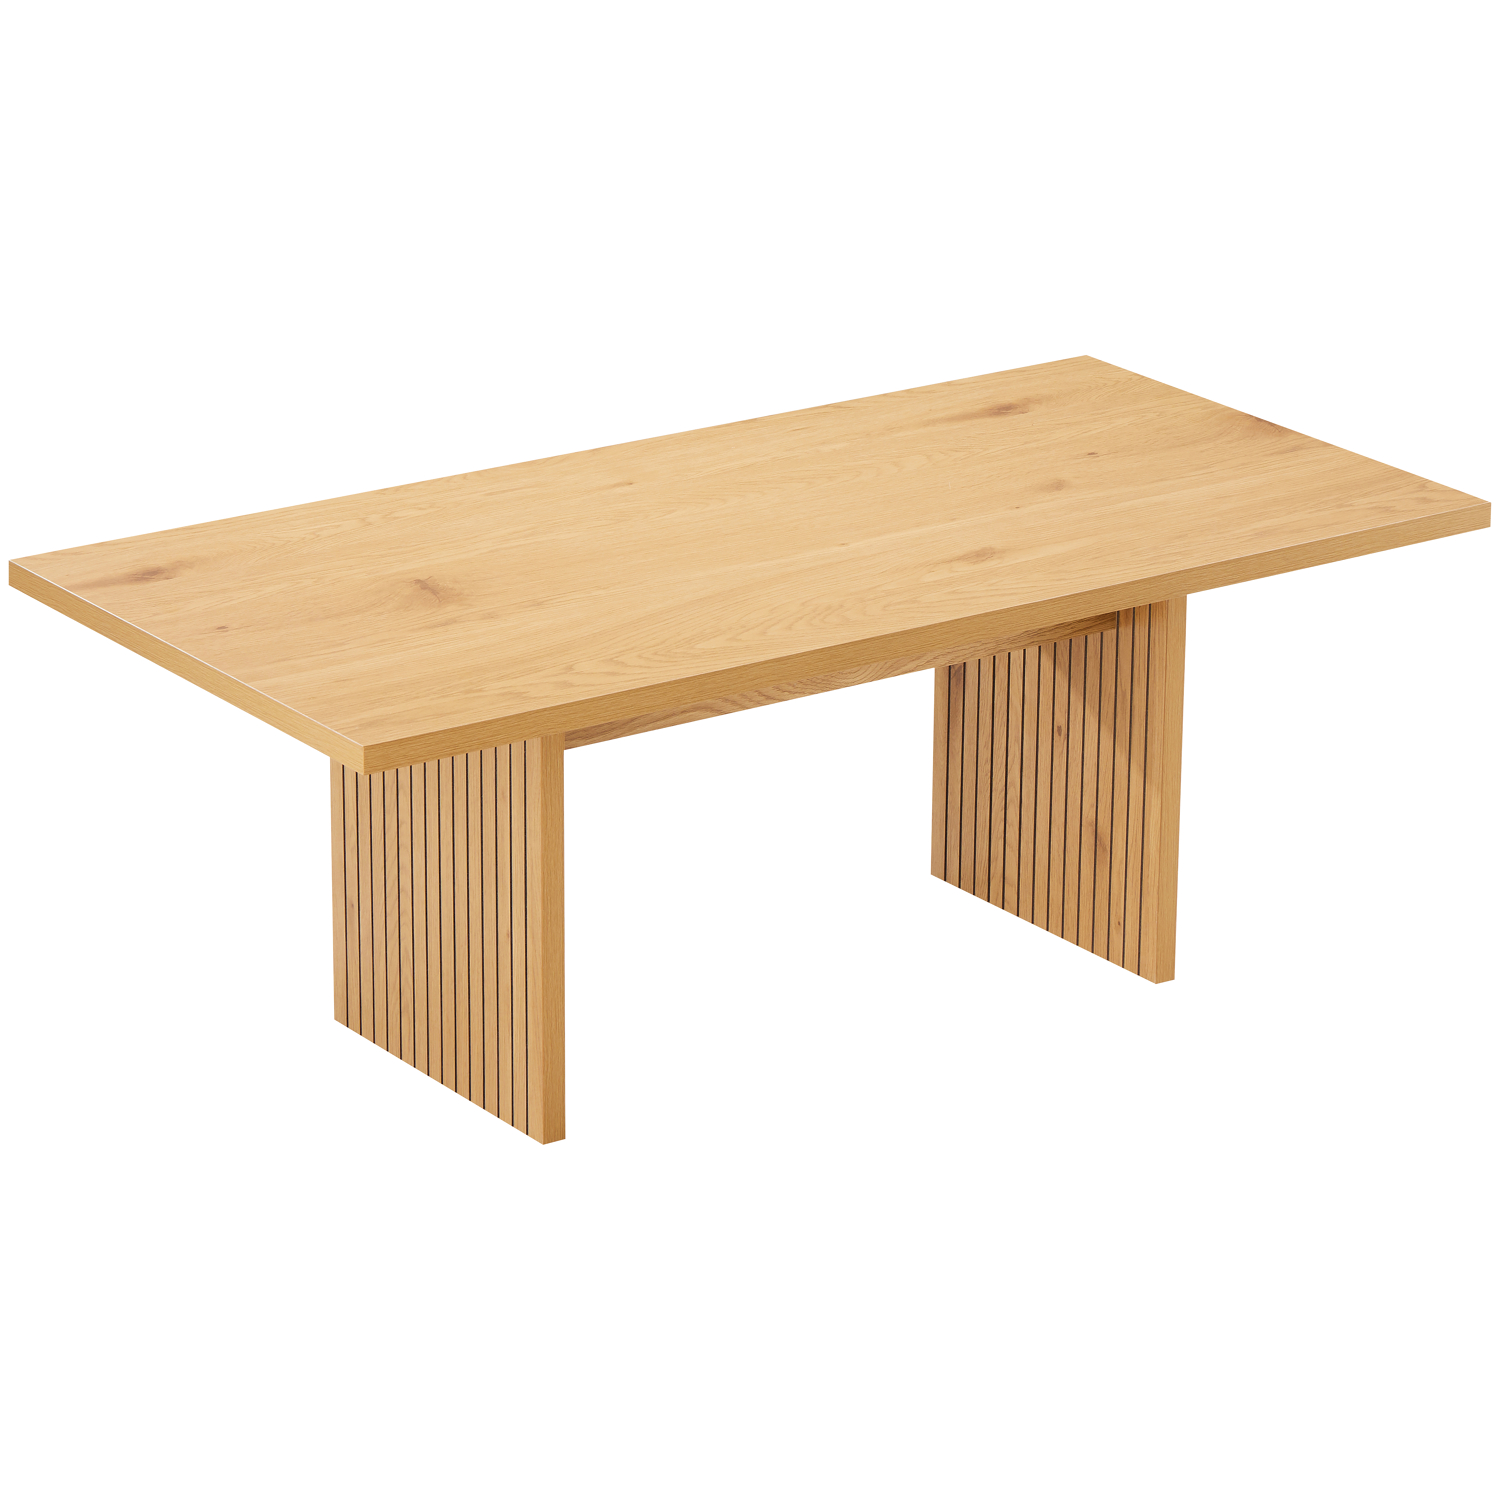 table basse rectangulaire en bois style scandinave 120cm